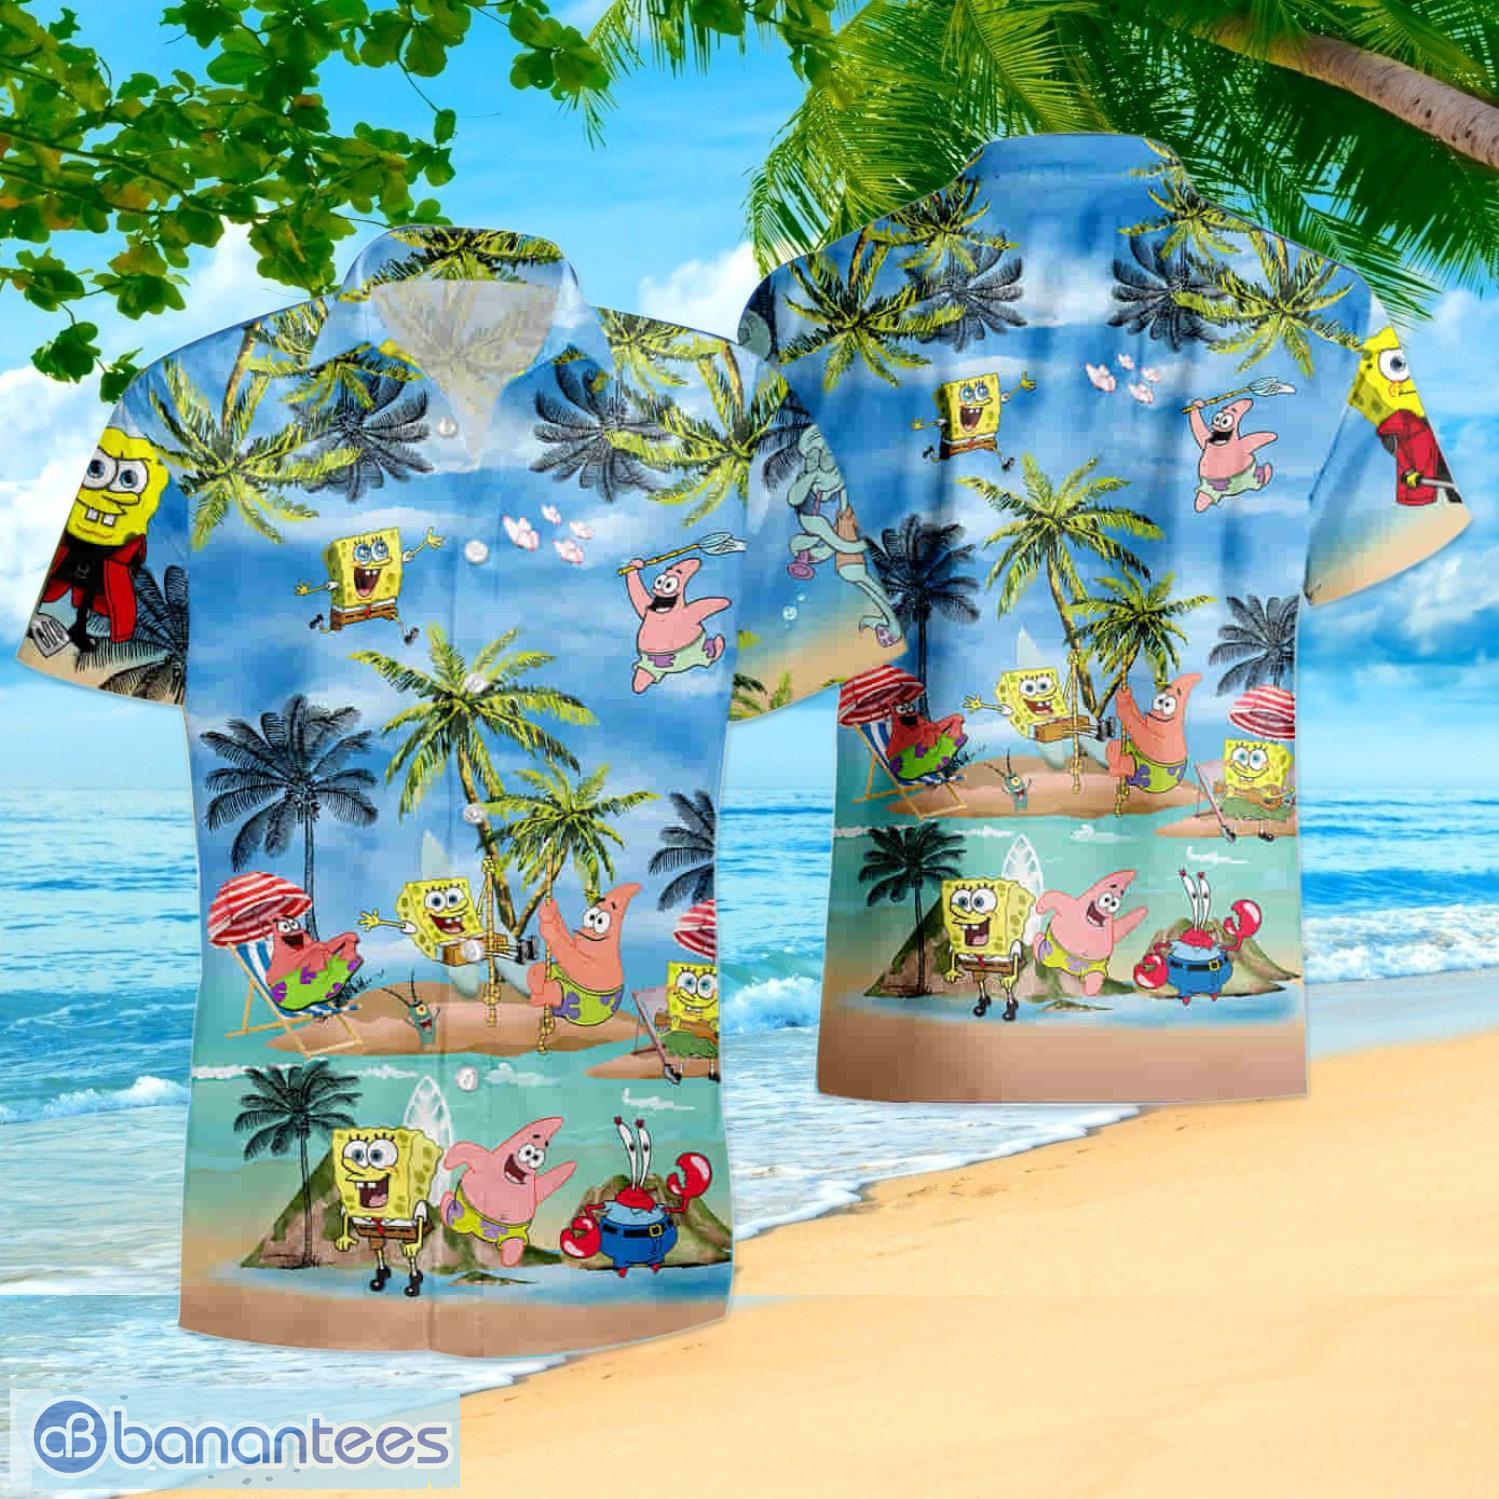 Mlb Boston Red Sox Short Sleeve Aloha Hawaiian Shirt And Shorts Beach Gift  - Banantees